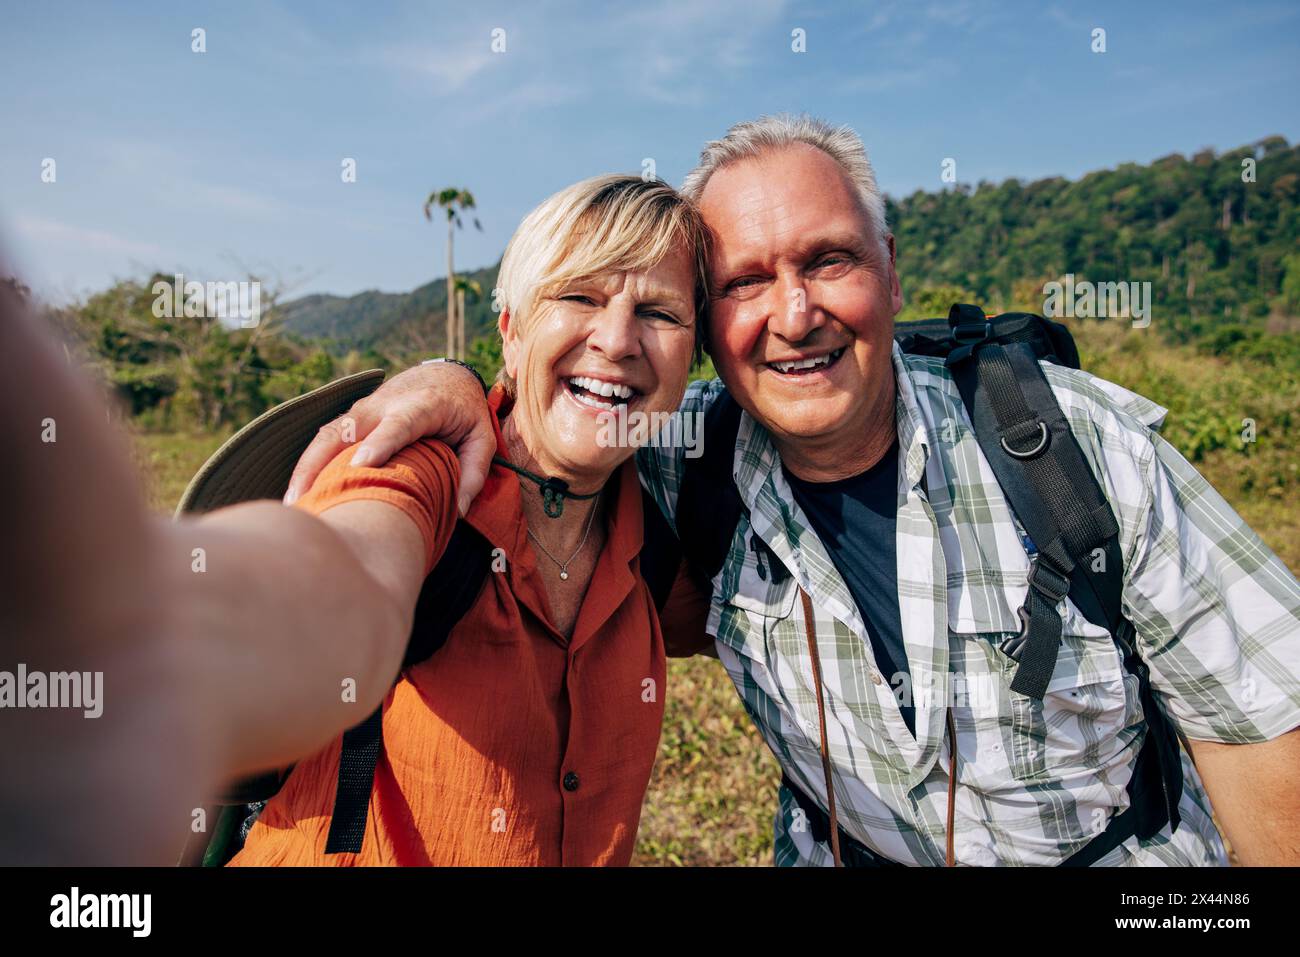 Ritratto di una donna anziana sorridente che scatta selfie con un uomo in vacanza Foto Stock